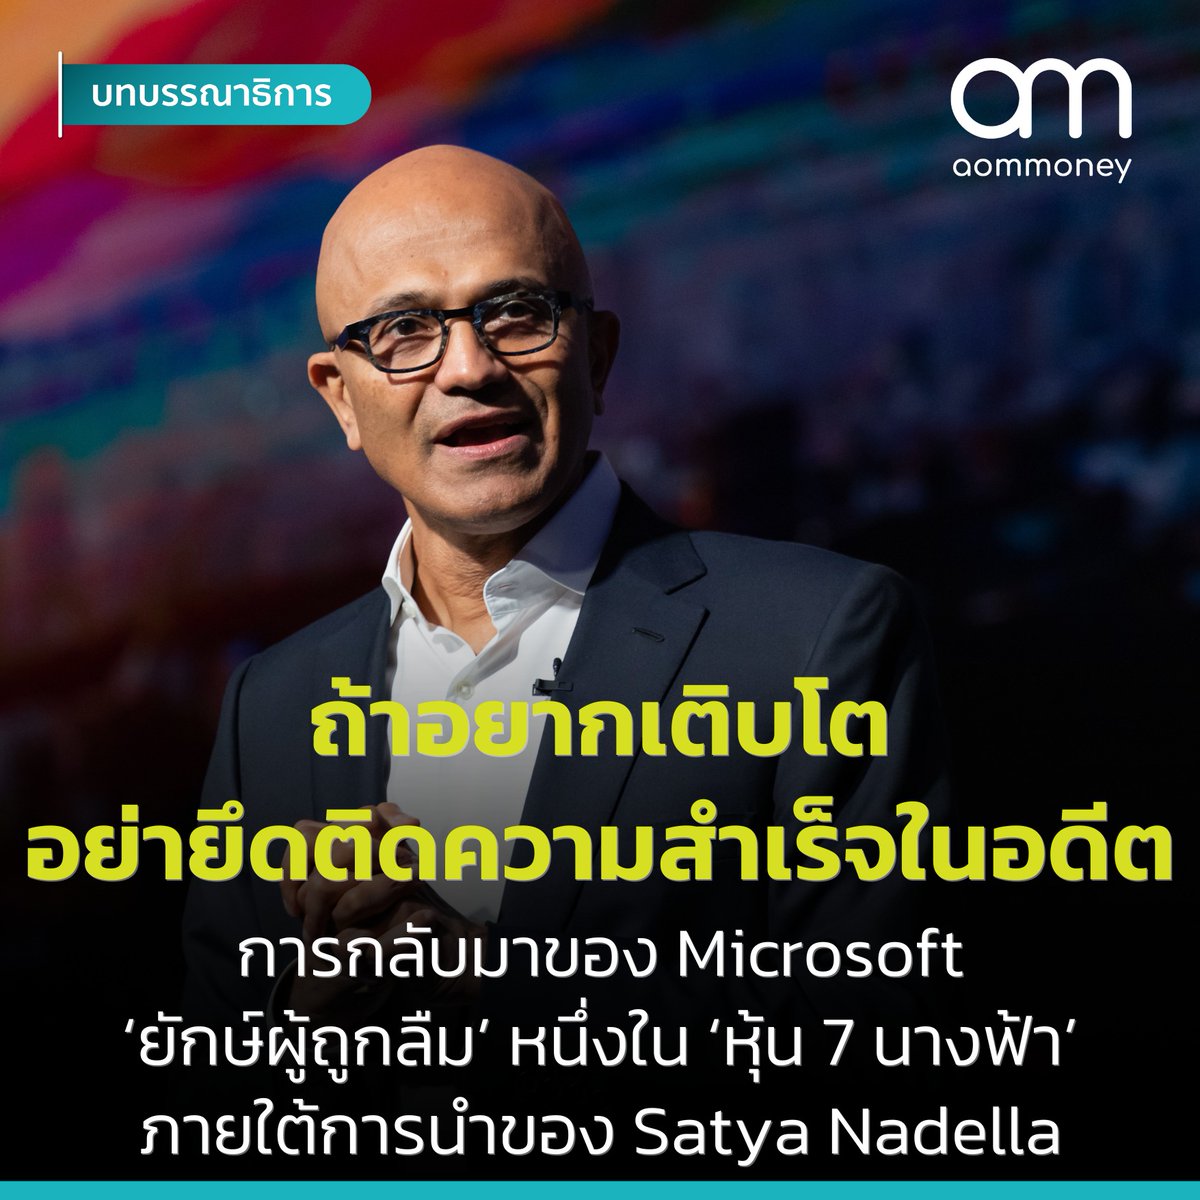 ถ้าอยากเติบโต อย่ายึดติดความสำเร็จในอดีต การกลับมาของ Microsoft 'ยักษ์ผู้ถูกลืม' หนึ่งใน 'หุ้น 7 นางฟ้า' ภายใต้การนำของ Satya Nadella
.
อ่านเพิ่มเติมได้ที่ facebook.com/photo/?fbid=85…
.
#Microsoft #Business #Success #SatyaNadella #สัตยานาเดลลา #หุ้น #เจ็ดนางฟ้า #MagnificentSeven